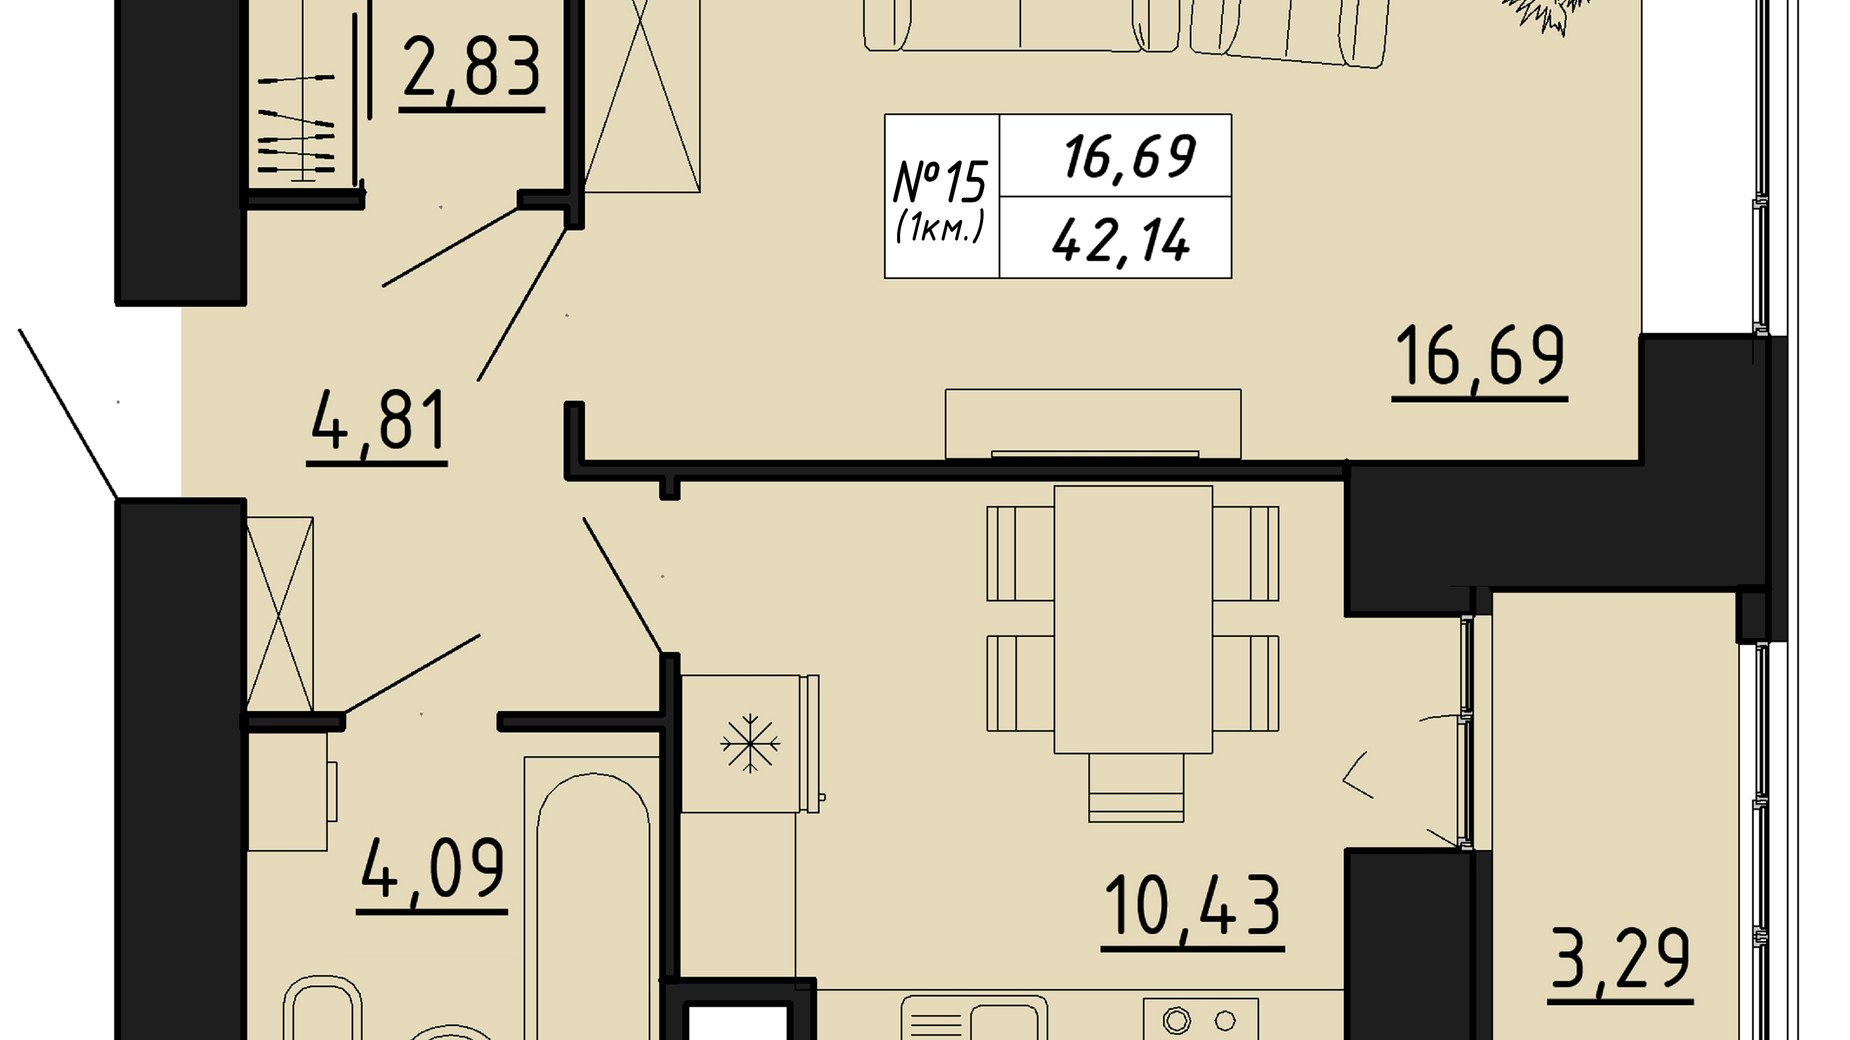 Планировка 1-комнатной квартиры в ЖК Freedom 42.14 м², фото 550126